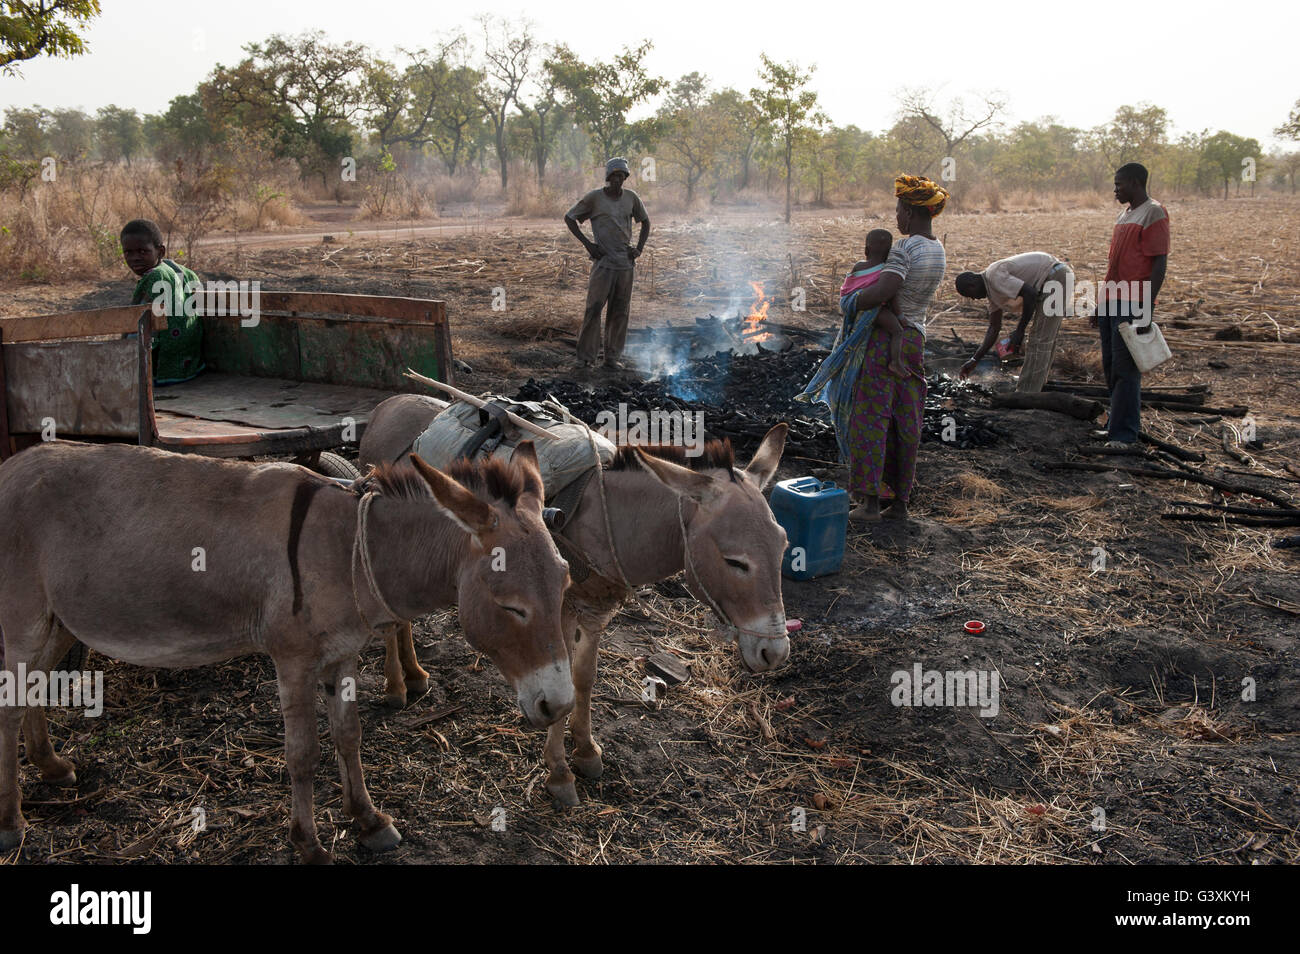 MALI, Sahel, sur la production de charbon de bois de Bush est une incidence sur l'environnement de cette région à sec, le charbon est l'énergie utilisée pour la cuisine Banque D'Images